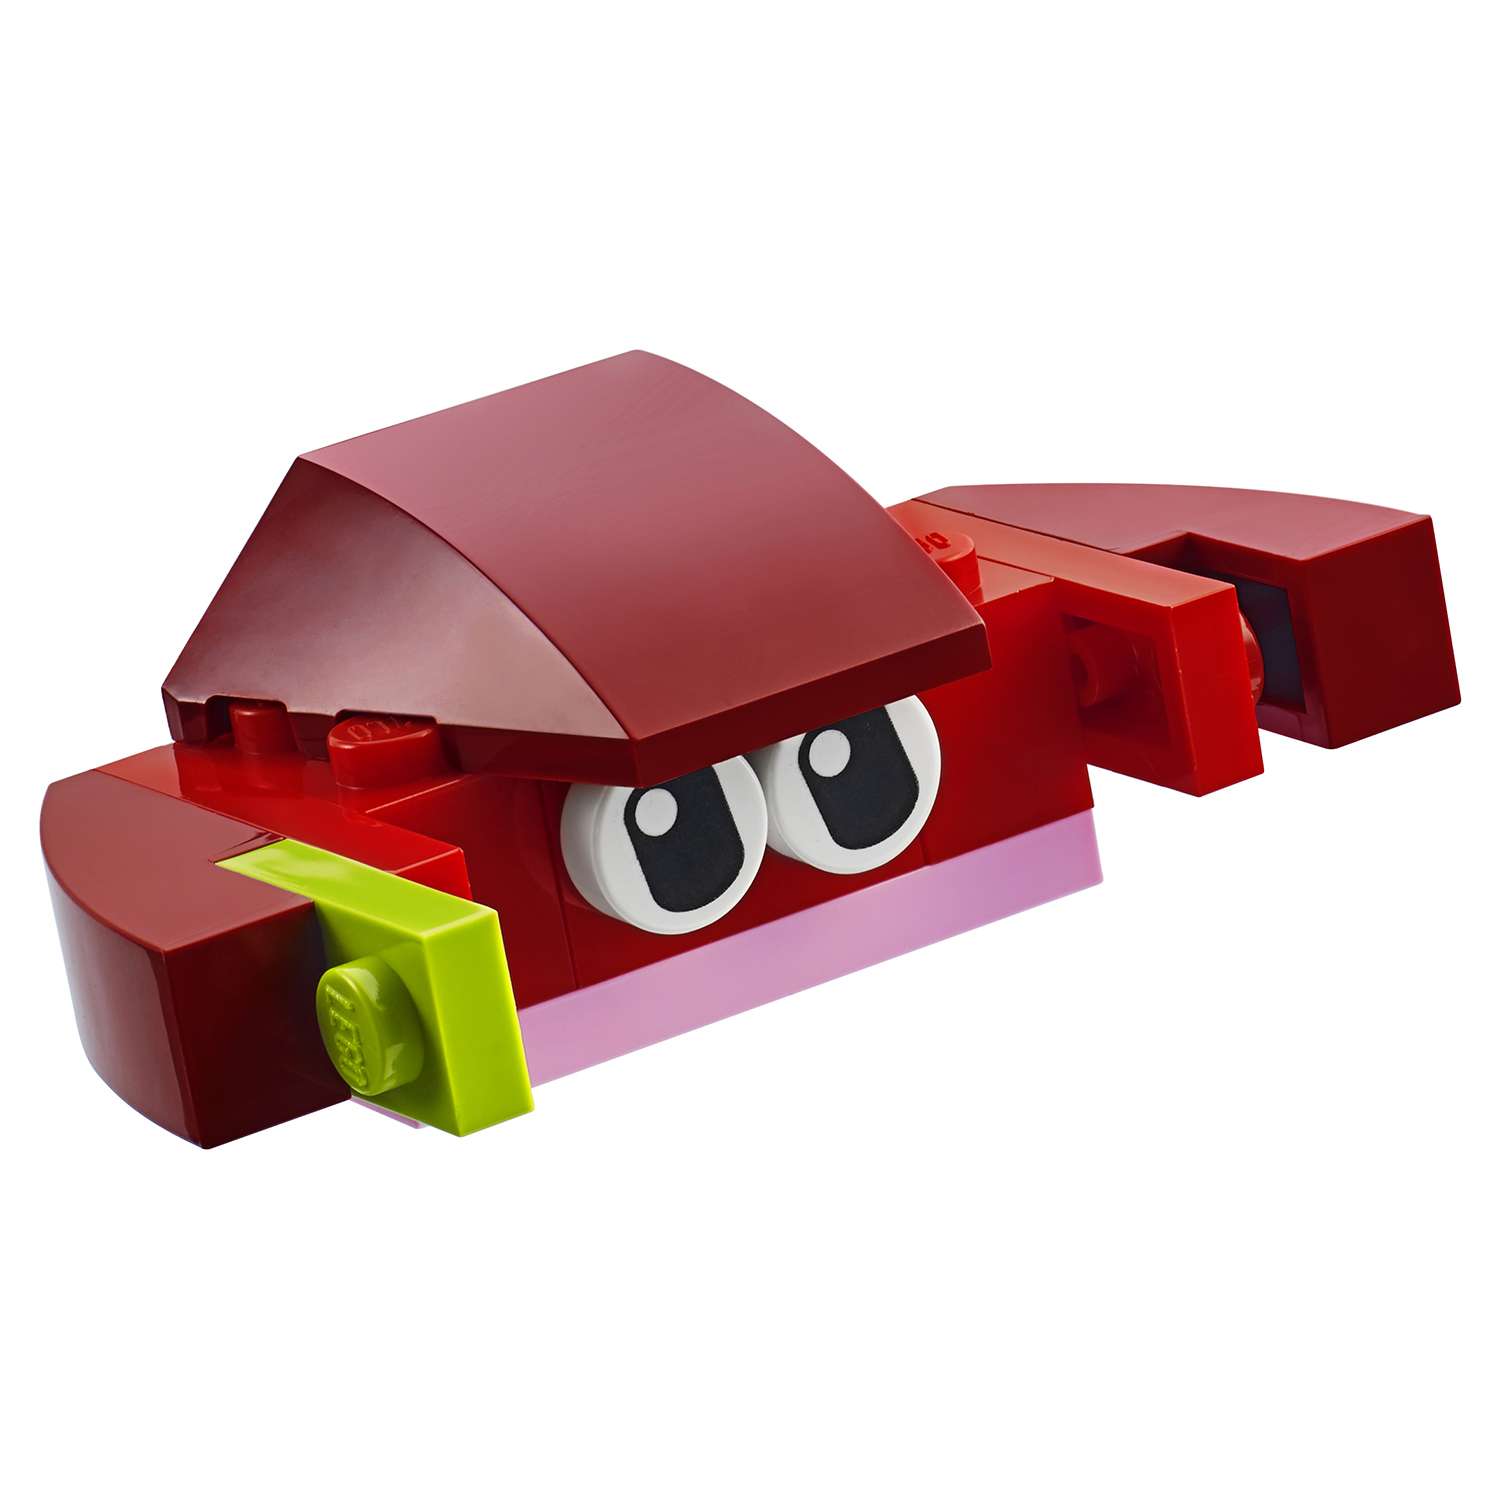 Конструктор LEGO Classic Красный набор для творчества (10707) - фото 10